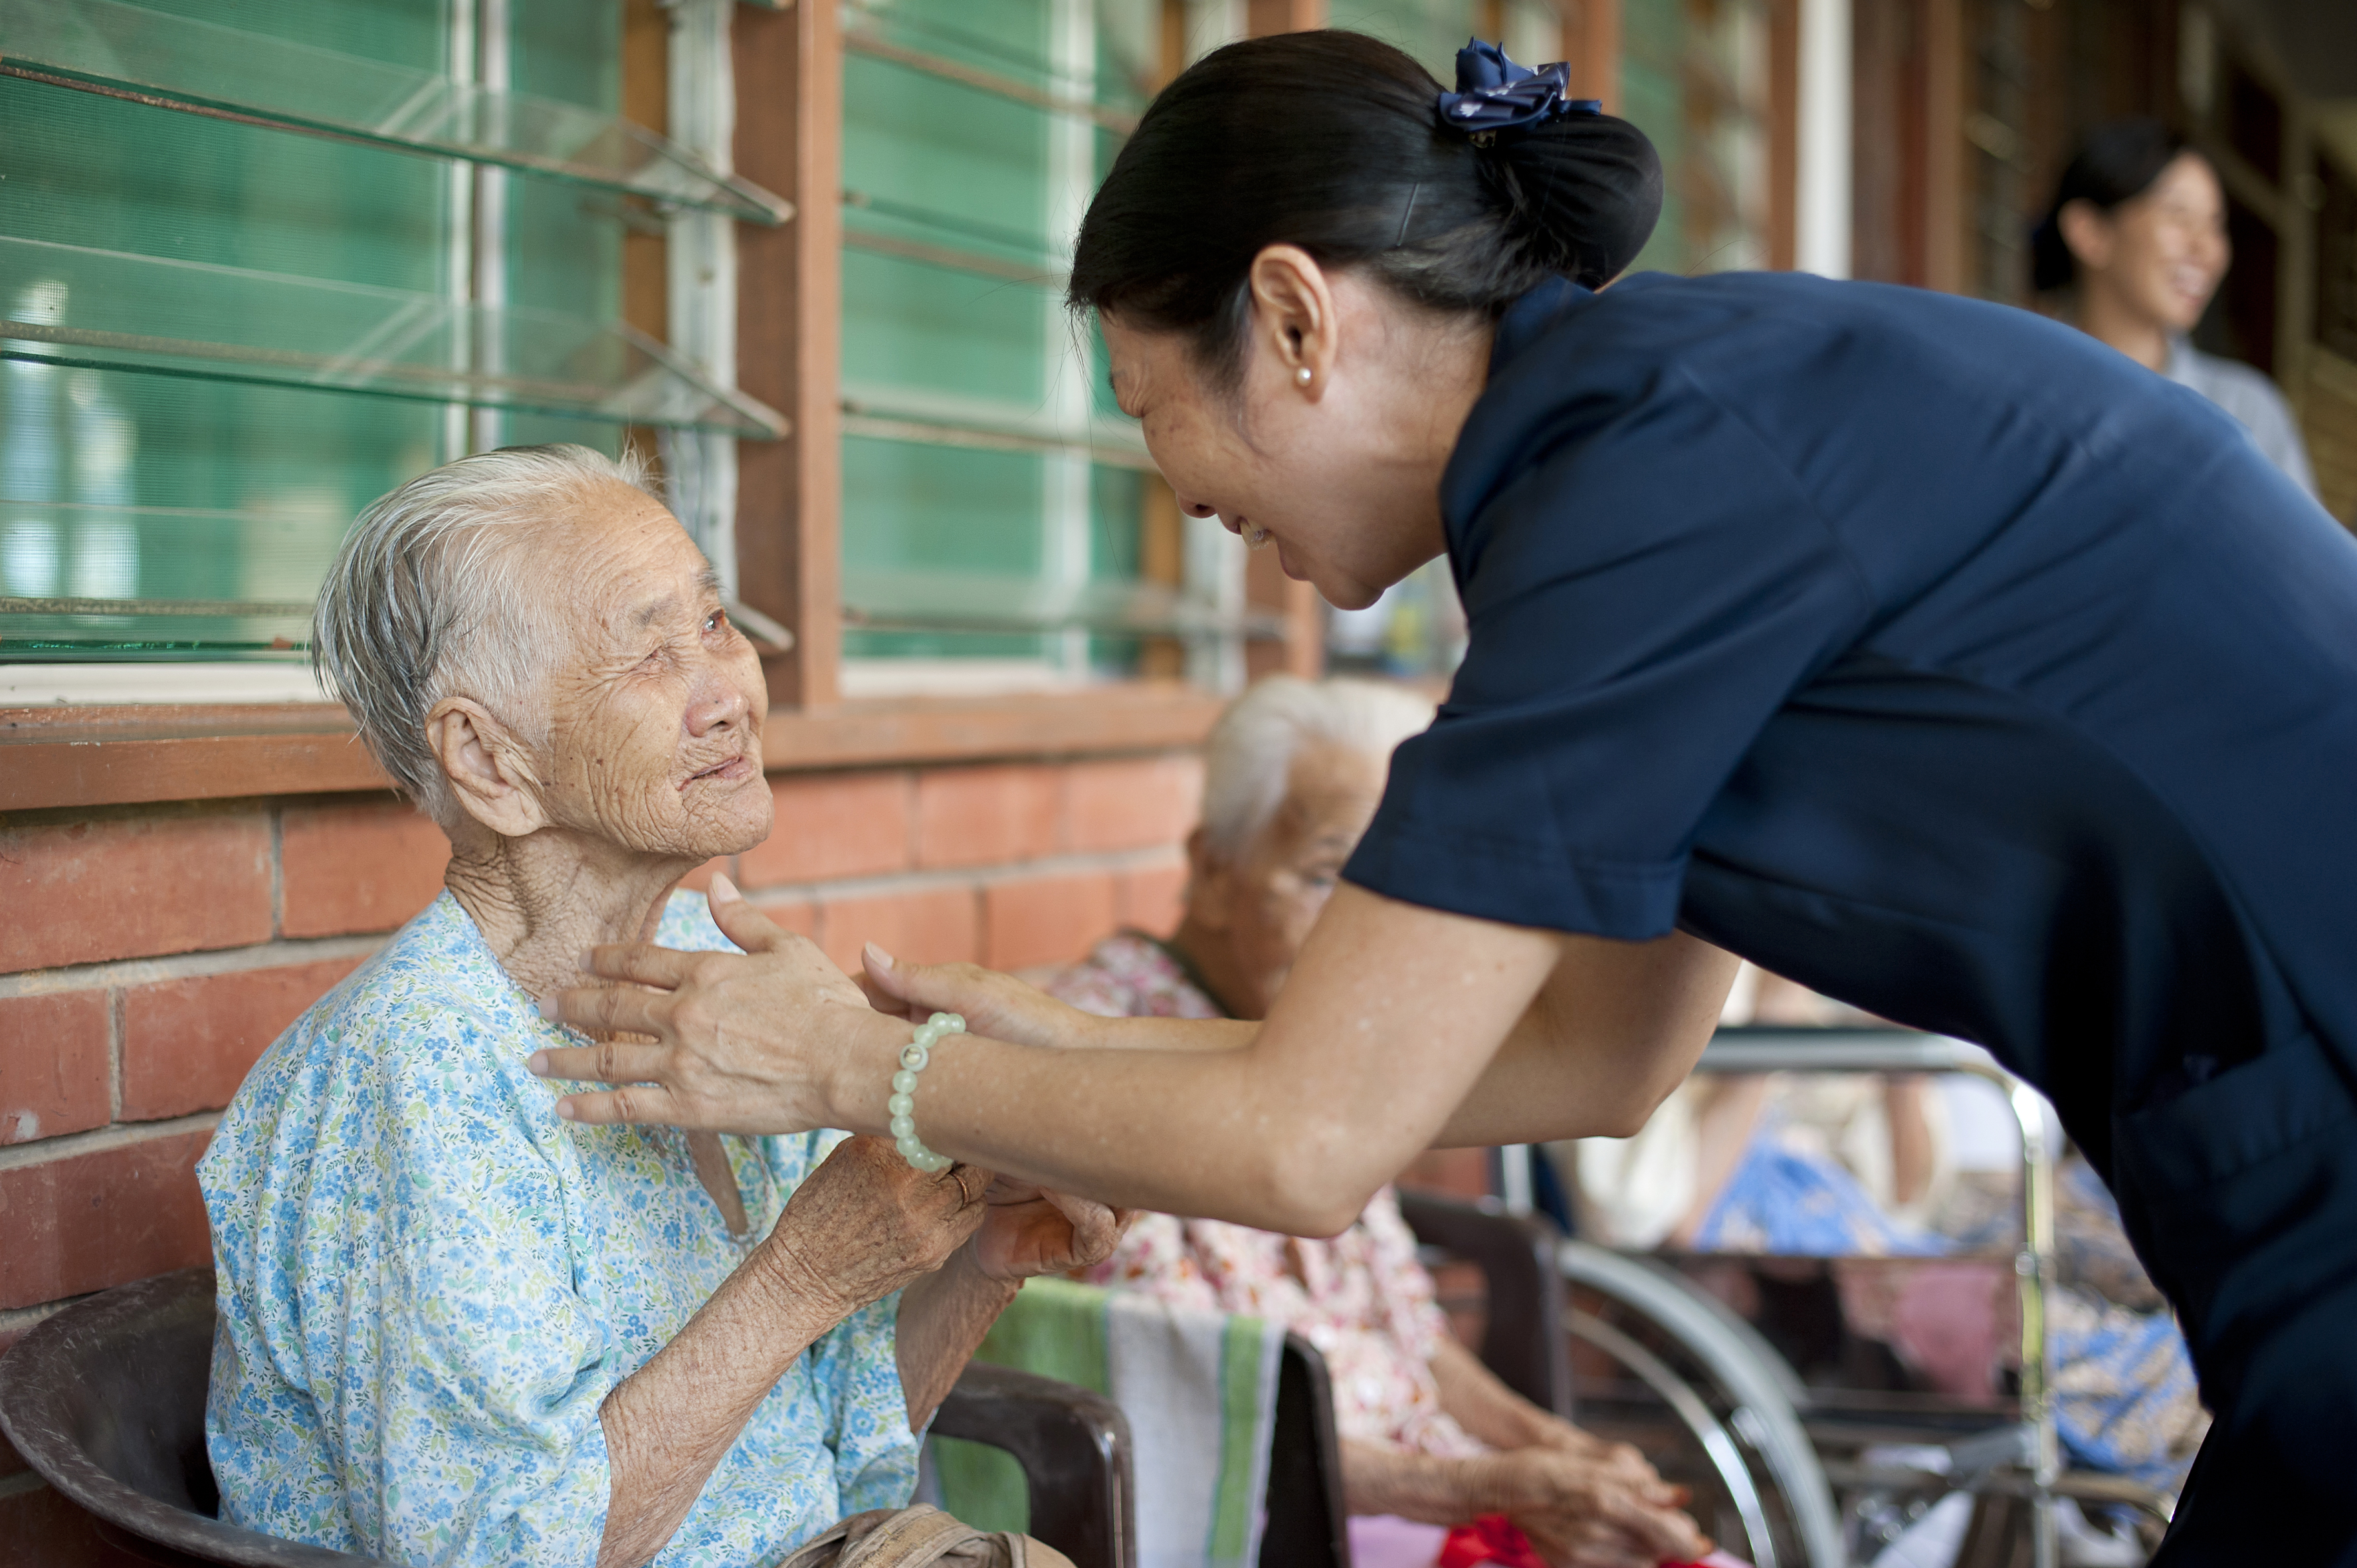 Caring for elderly